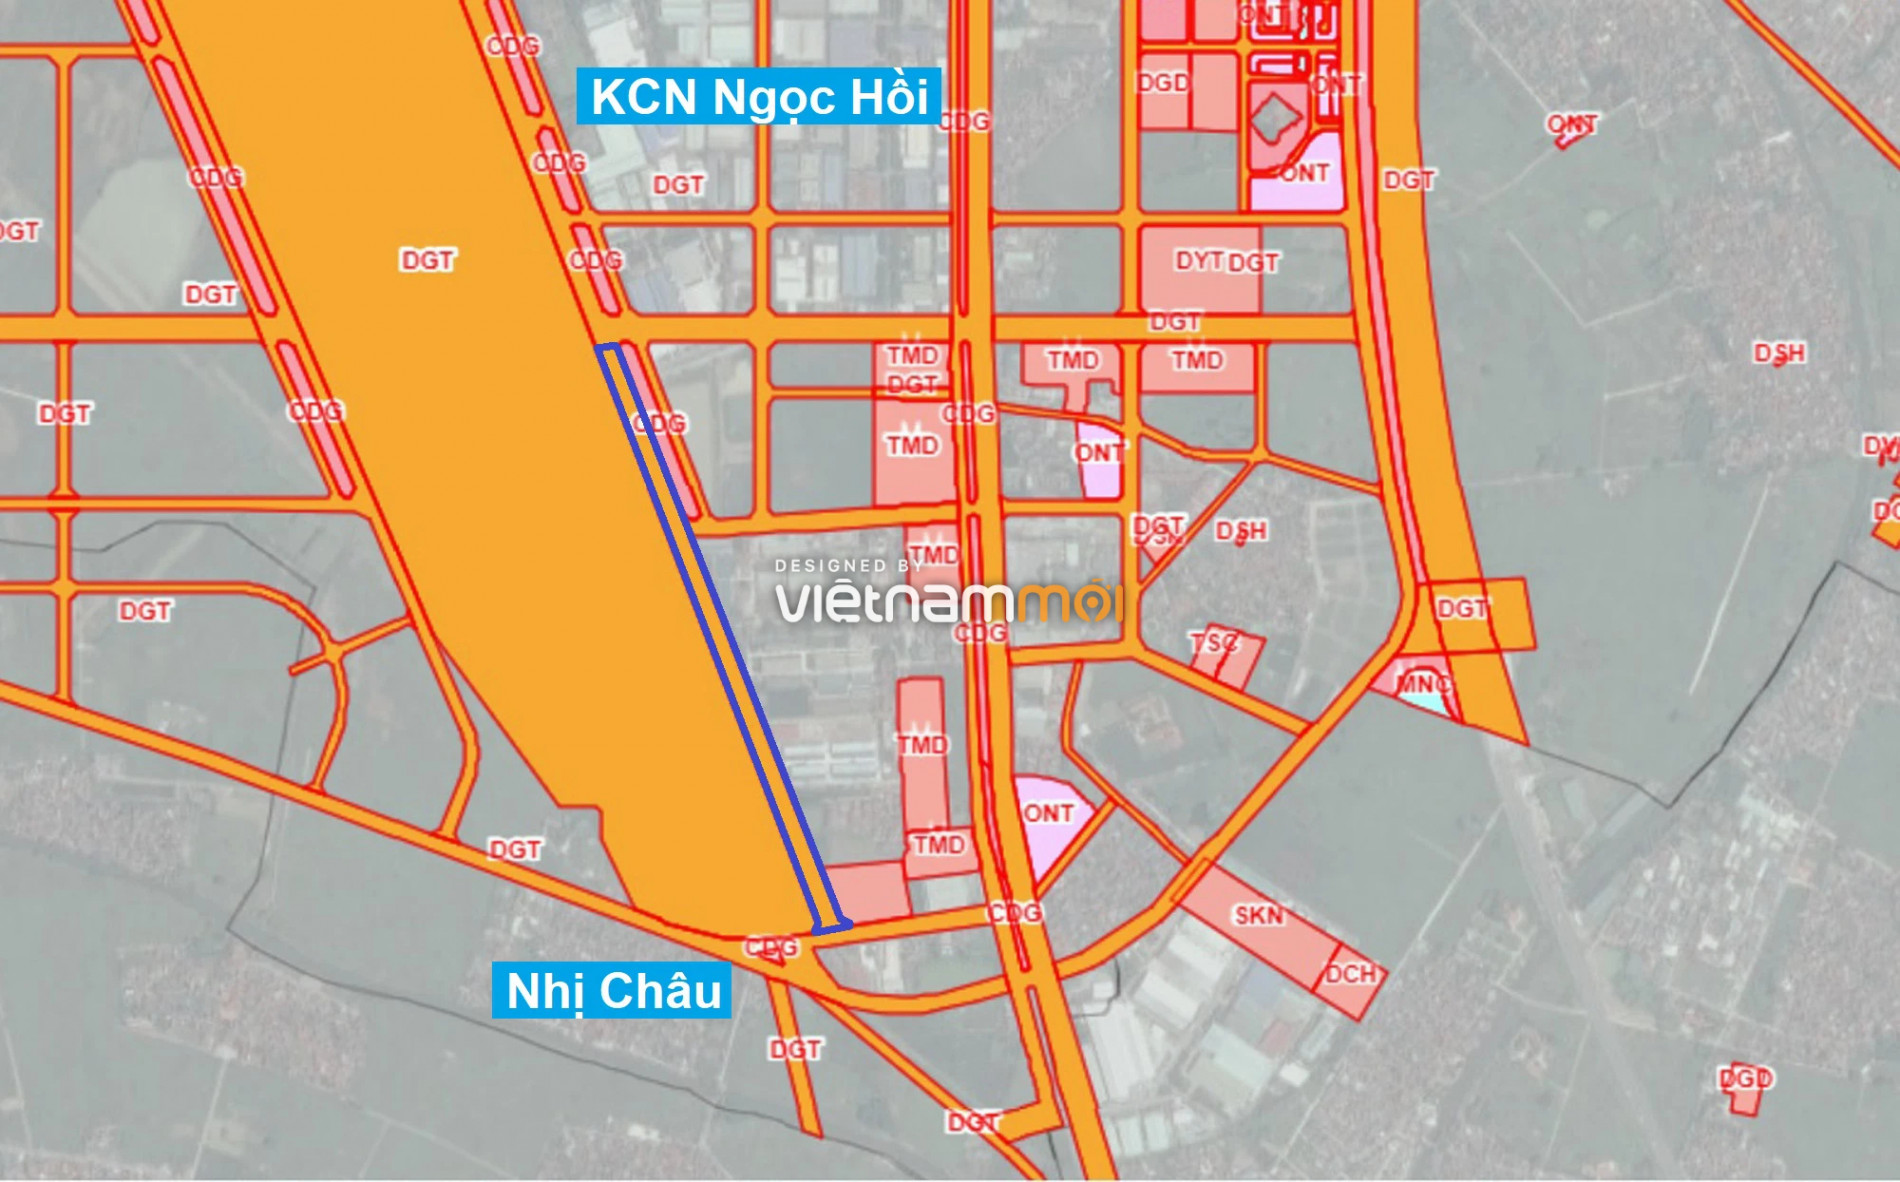 Những khu đất sắp thu hồi để mở đường ở xã Liên Ninh, Thanh Trì, Hà Nội (phần 8) - Ảnh 8.